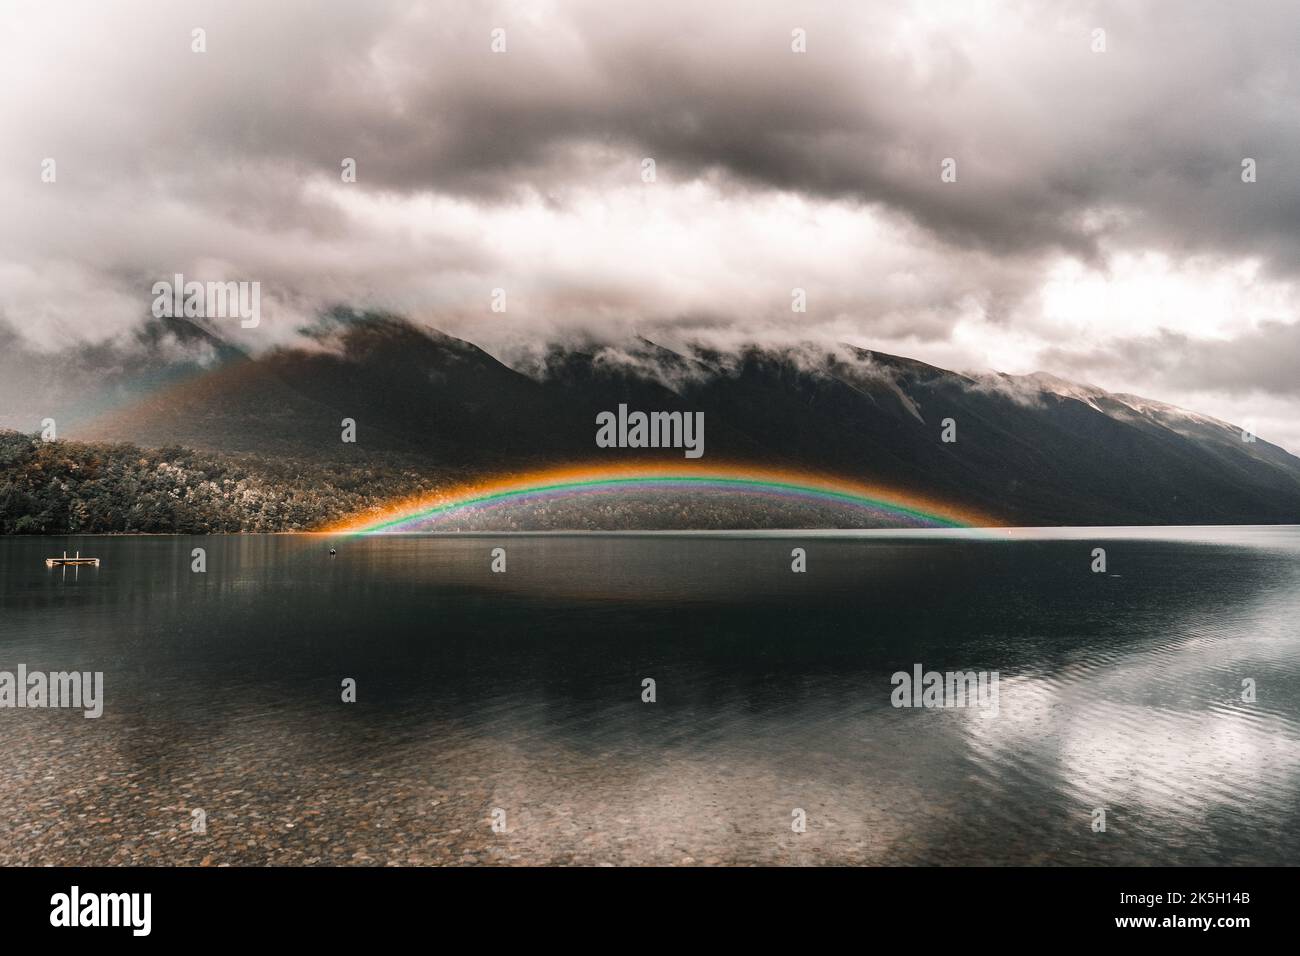 spettacolare e curioso arcobaleno luminoso sulle acque del tranquillo lago trasparente con fondo di pietre e rocce in un ambiente molto naturale Foto Stock